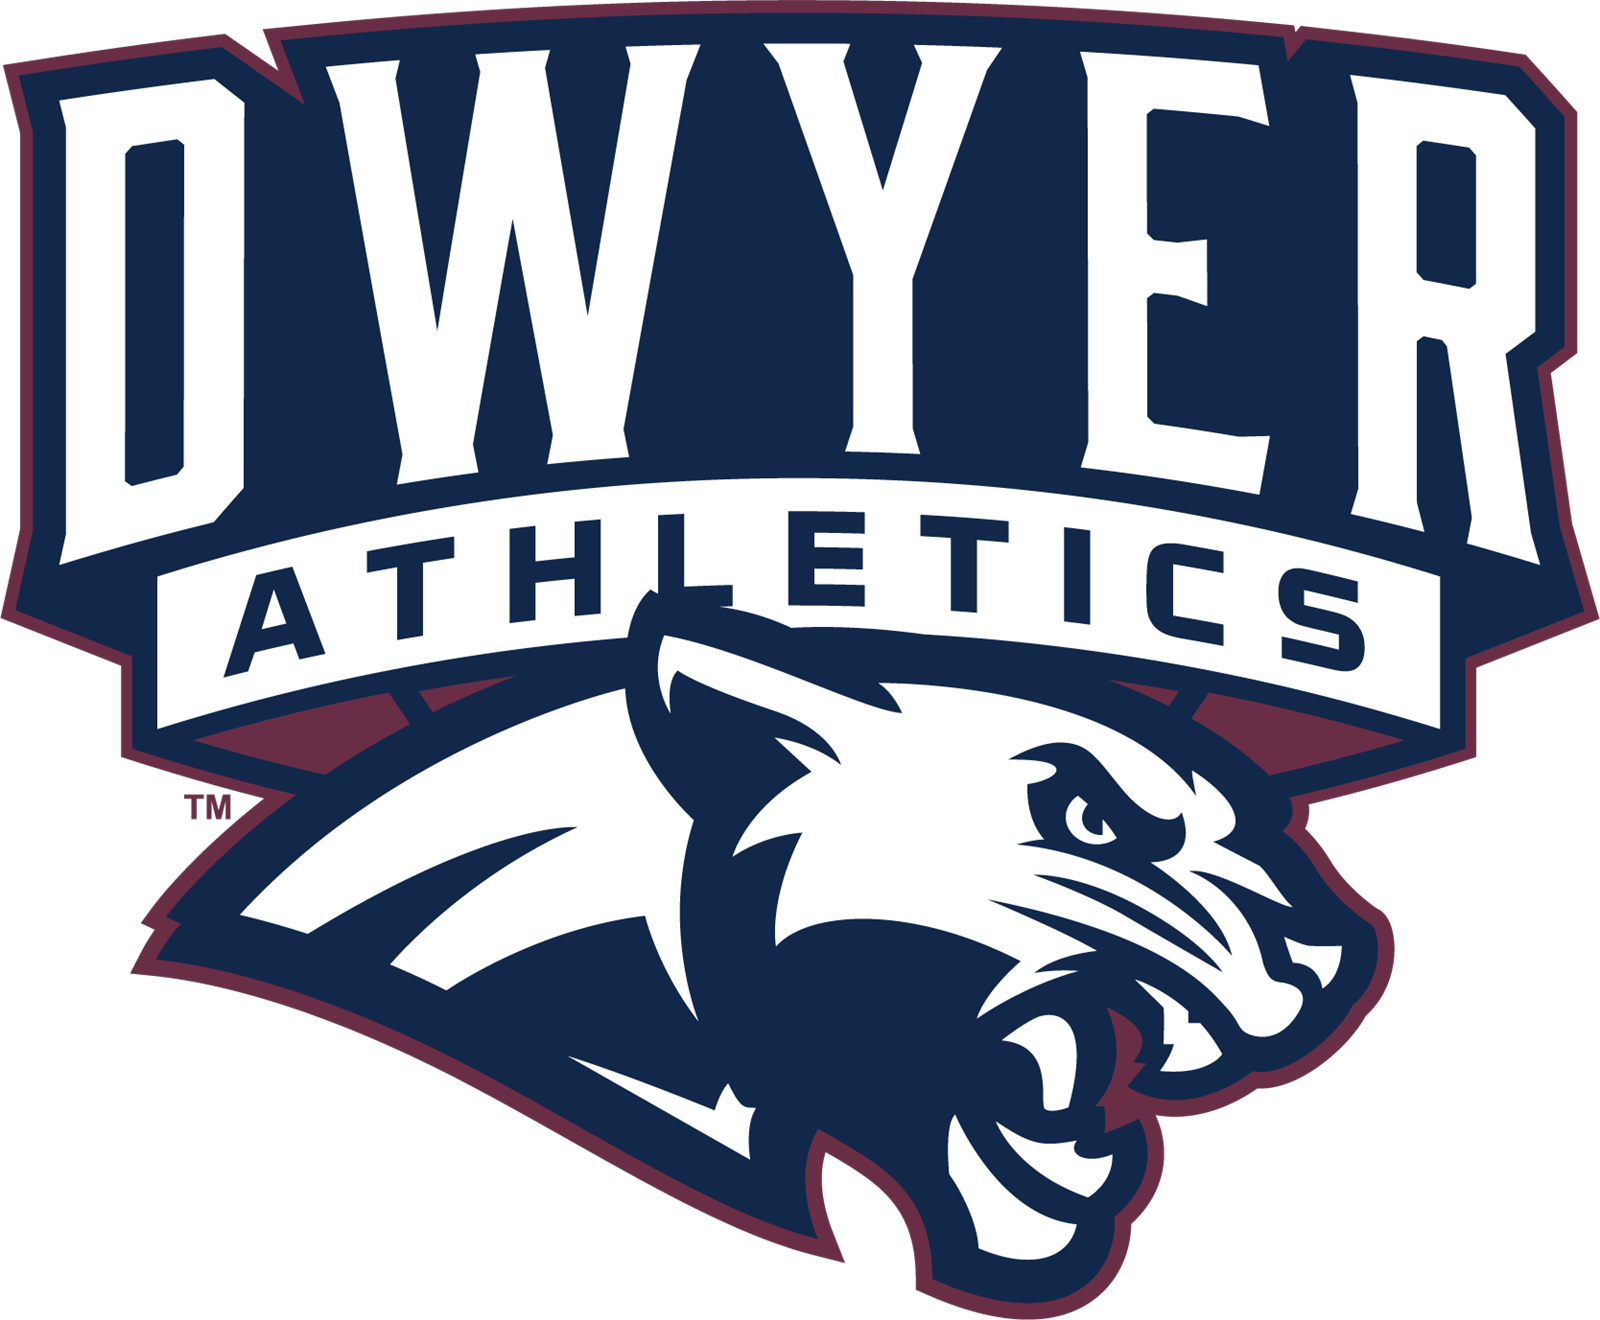 Dwyer Athletics logo